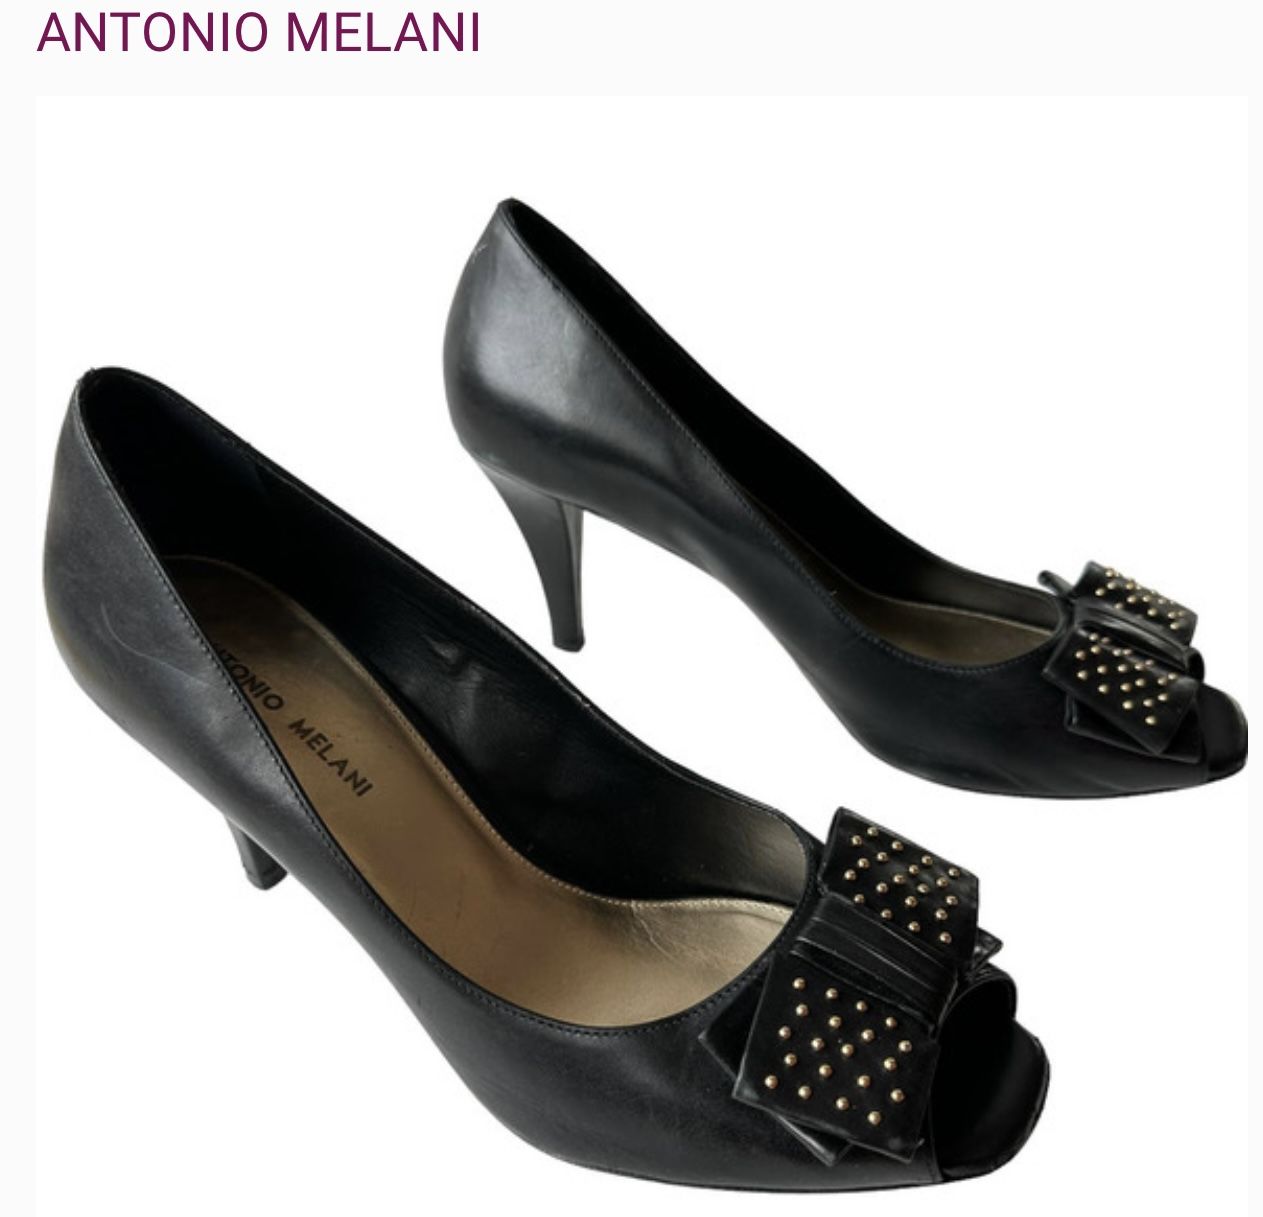 Antonio Melani Heels